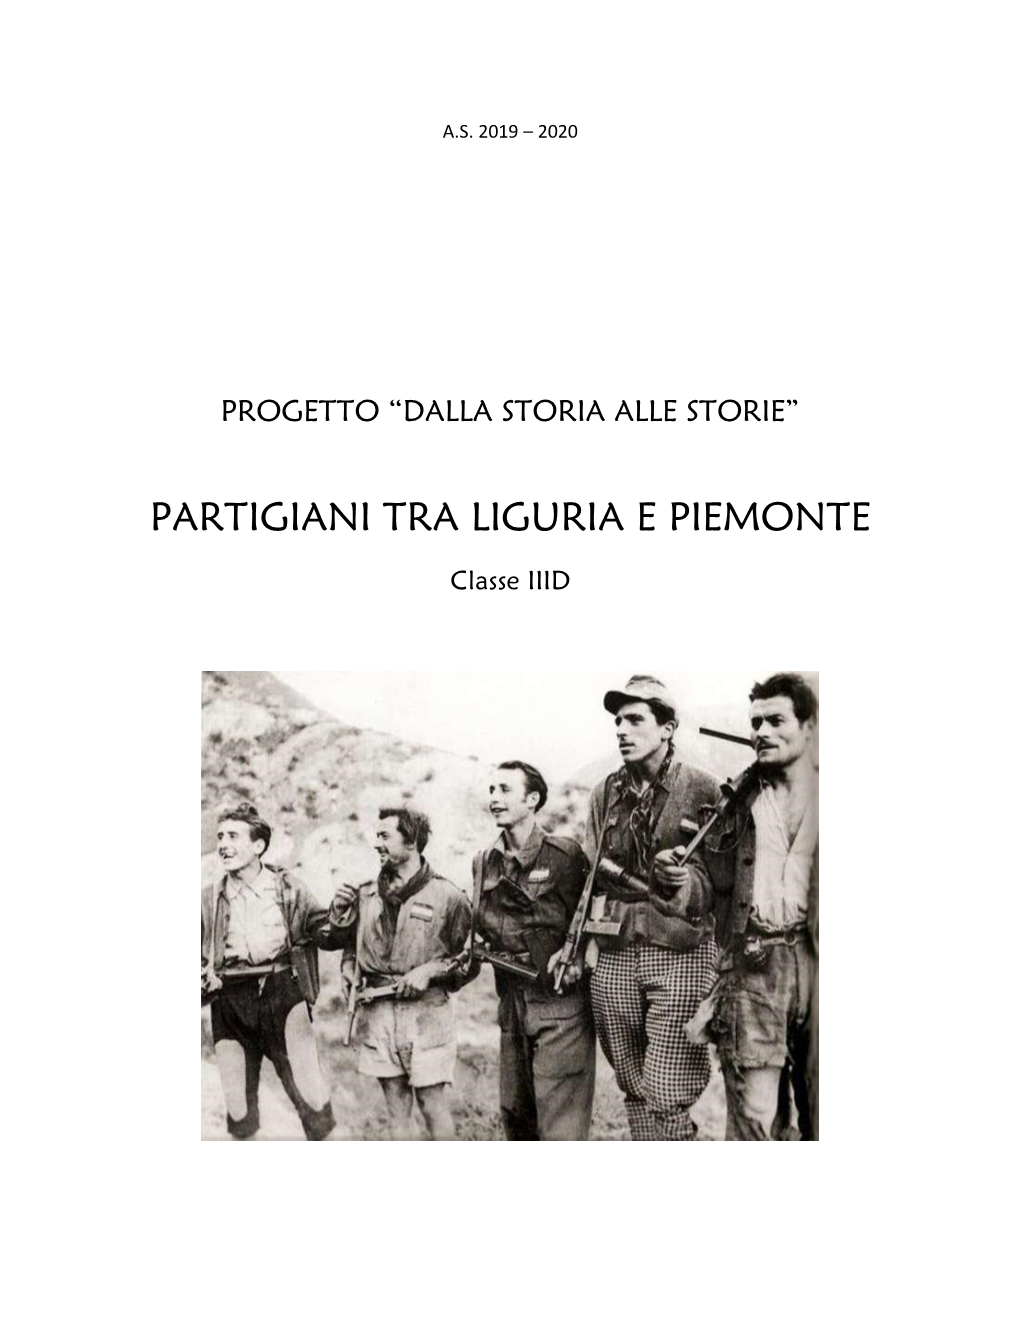 Partigiani Tra Liguria E Piemonte